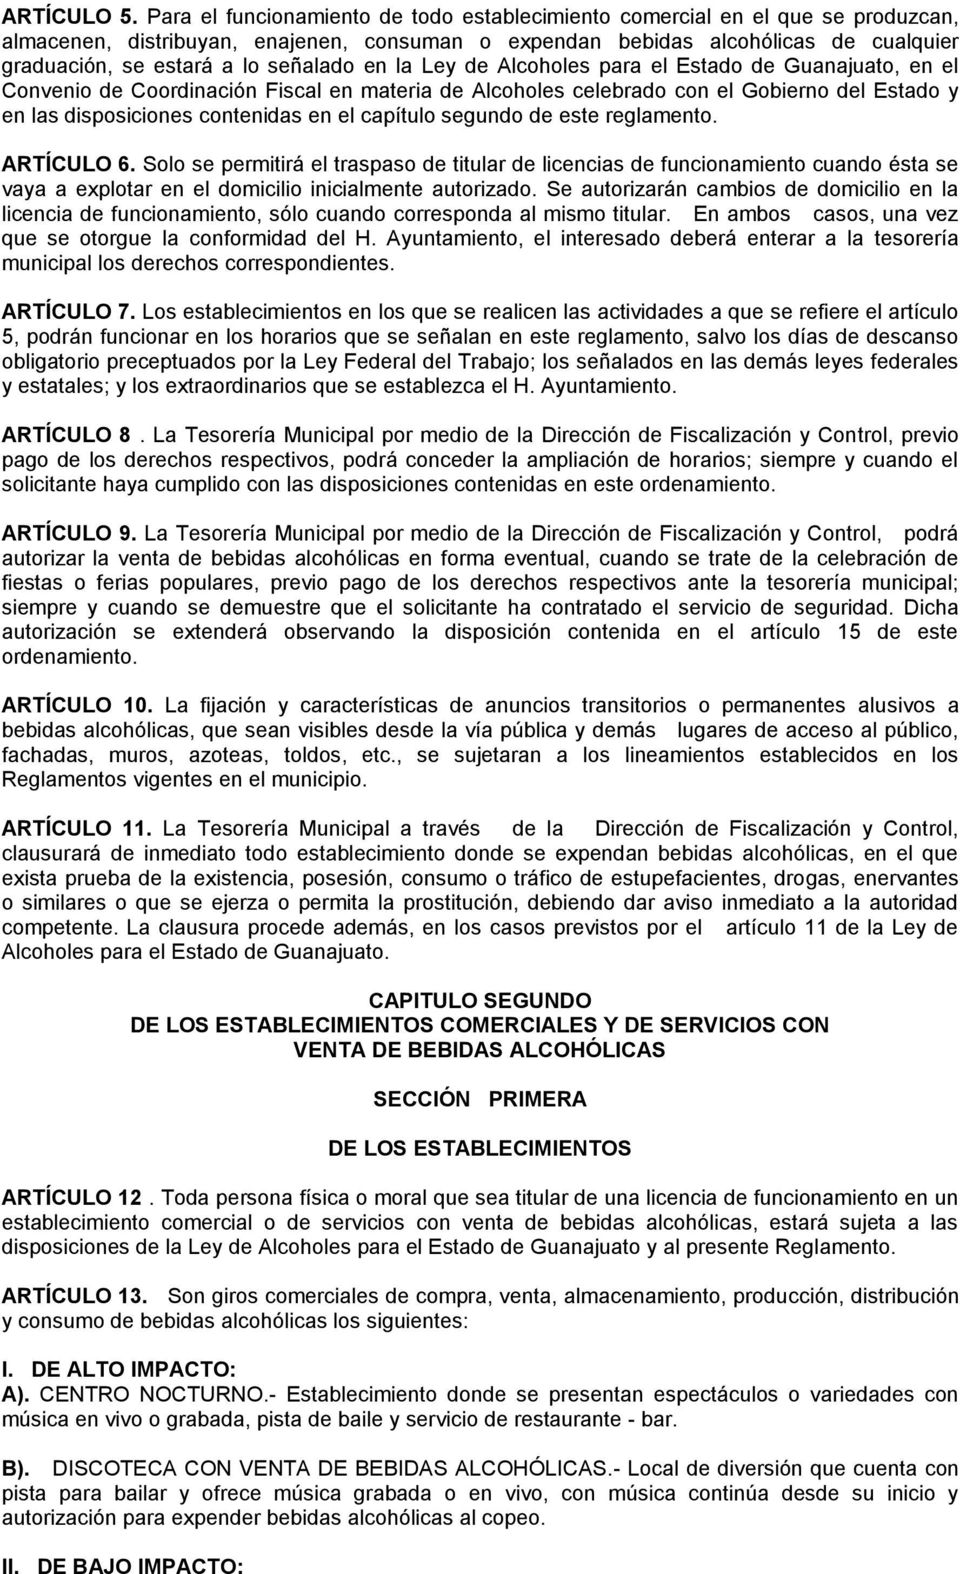 señalado en la Ley de Alcoholes para el Estado de Guanajuato, en el Convenio de Coordinación Fiscal en materia de Alcoholes celebrado con el Gobierno del Estado y en las disposiciones contenidas en